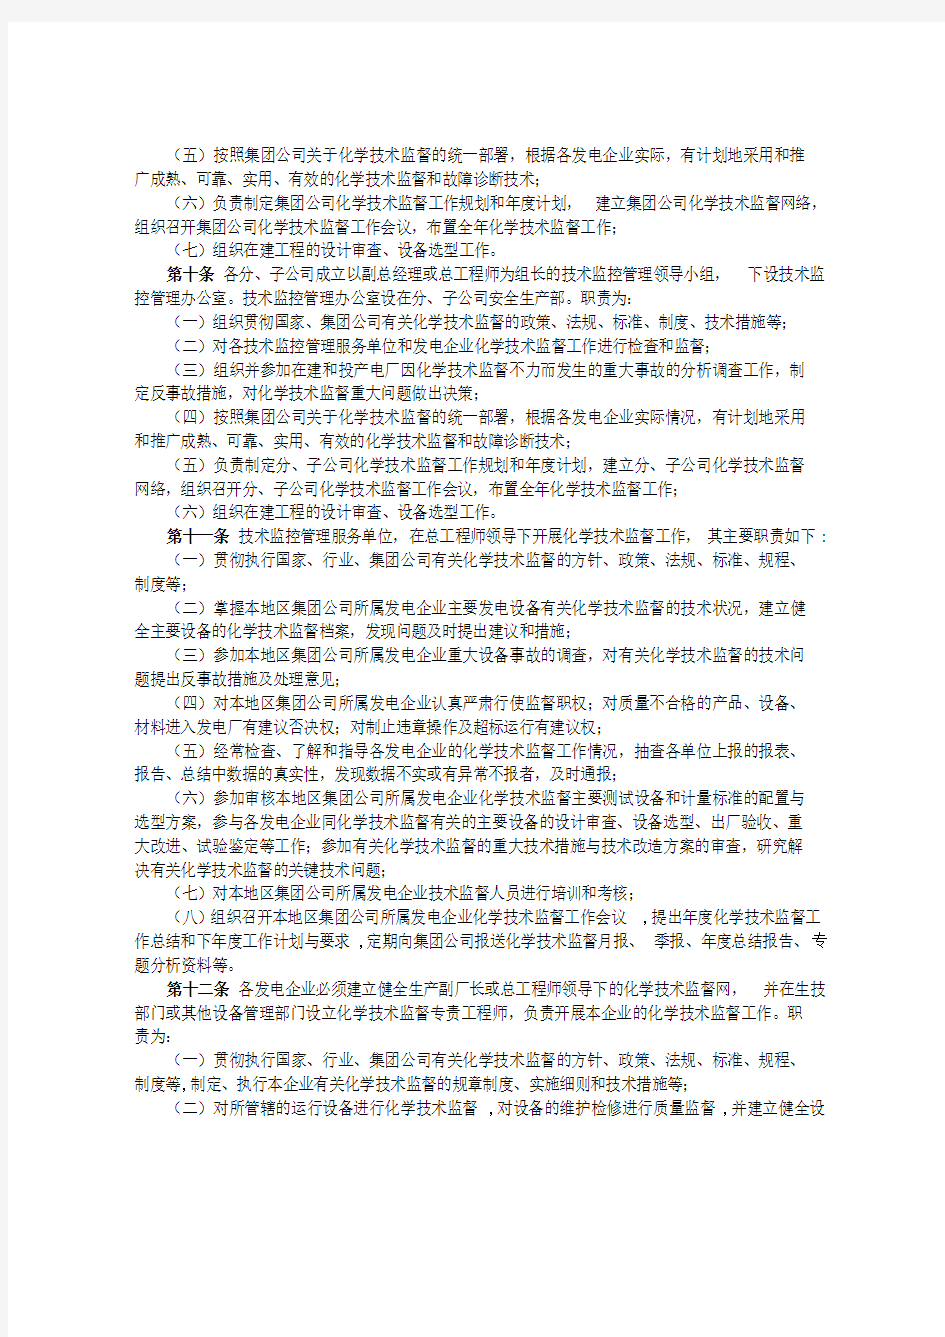 大唐集团制〔2013〕157号 附件：47 中国大唐集团公司水电化学技术监督制度